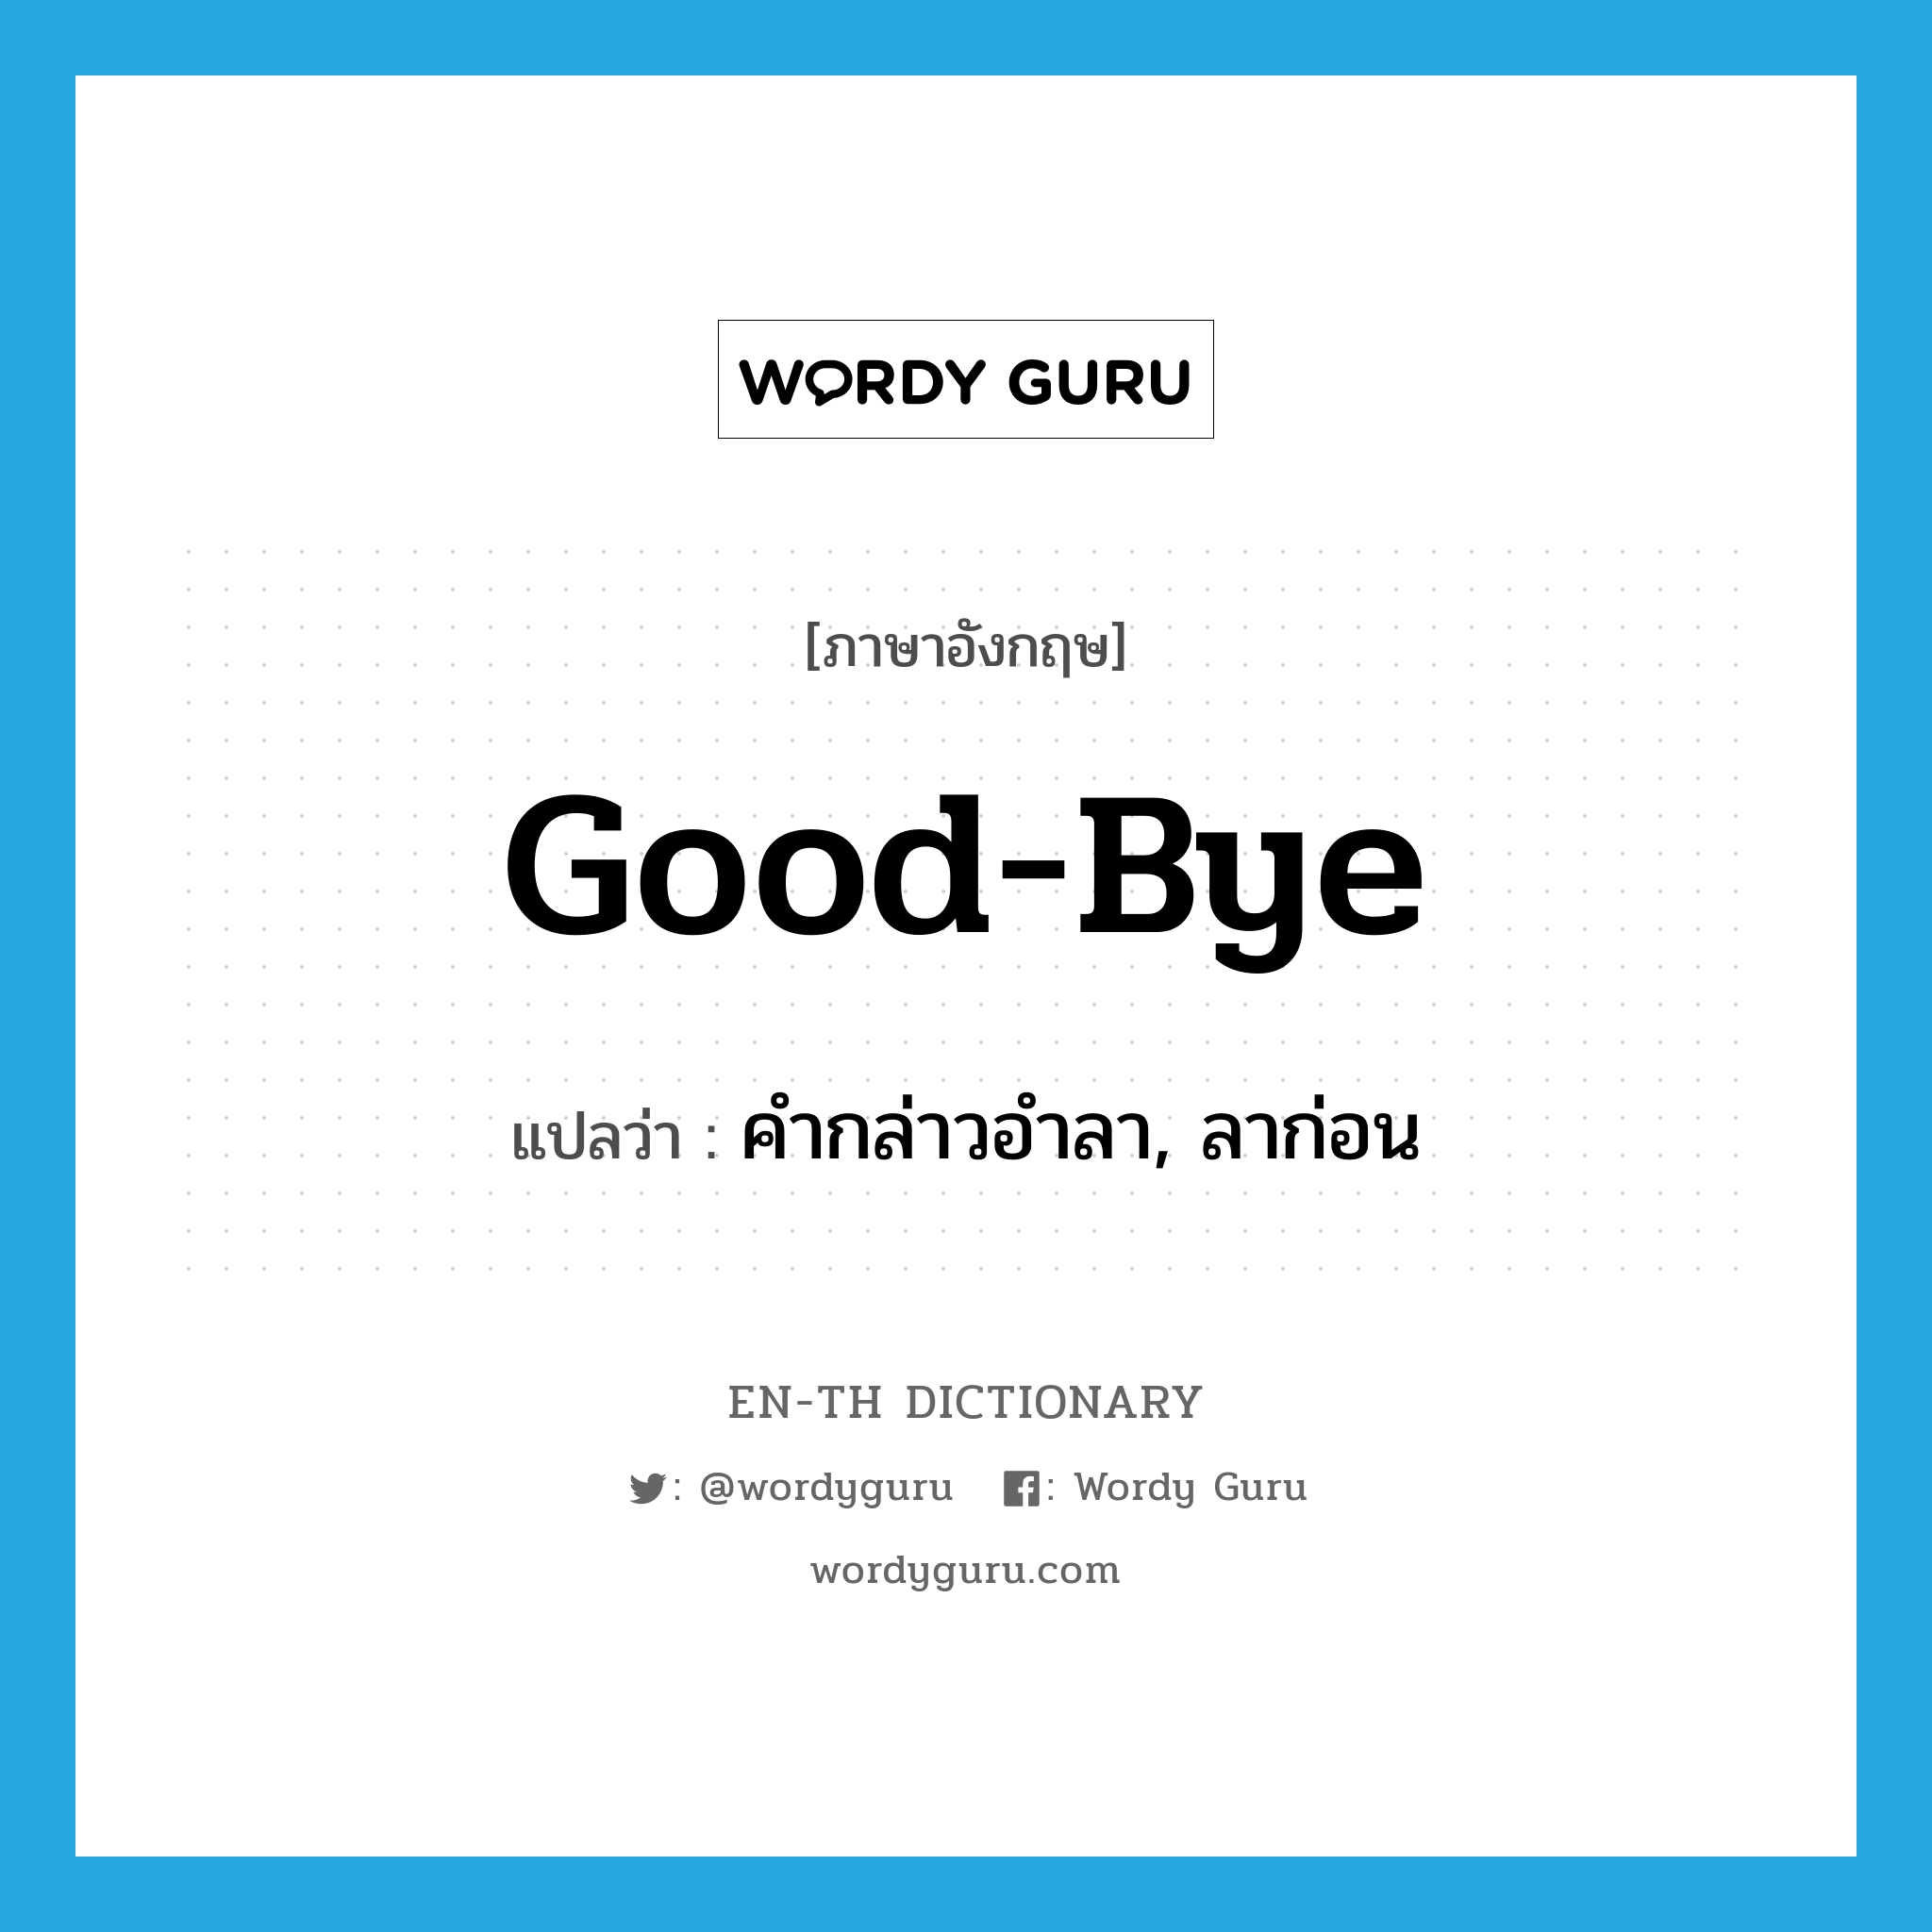 คำกล่าวอำลา, ลาก่อน ภาษาอังกฤษ?, คำศัพท์ภาษาอังกฤษ คำกล่าวอำลา, ลาก่อน แปลว่า good-bye ประเภท N หมวด N